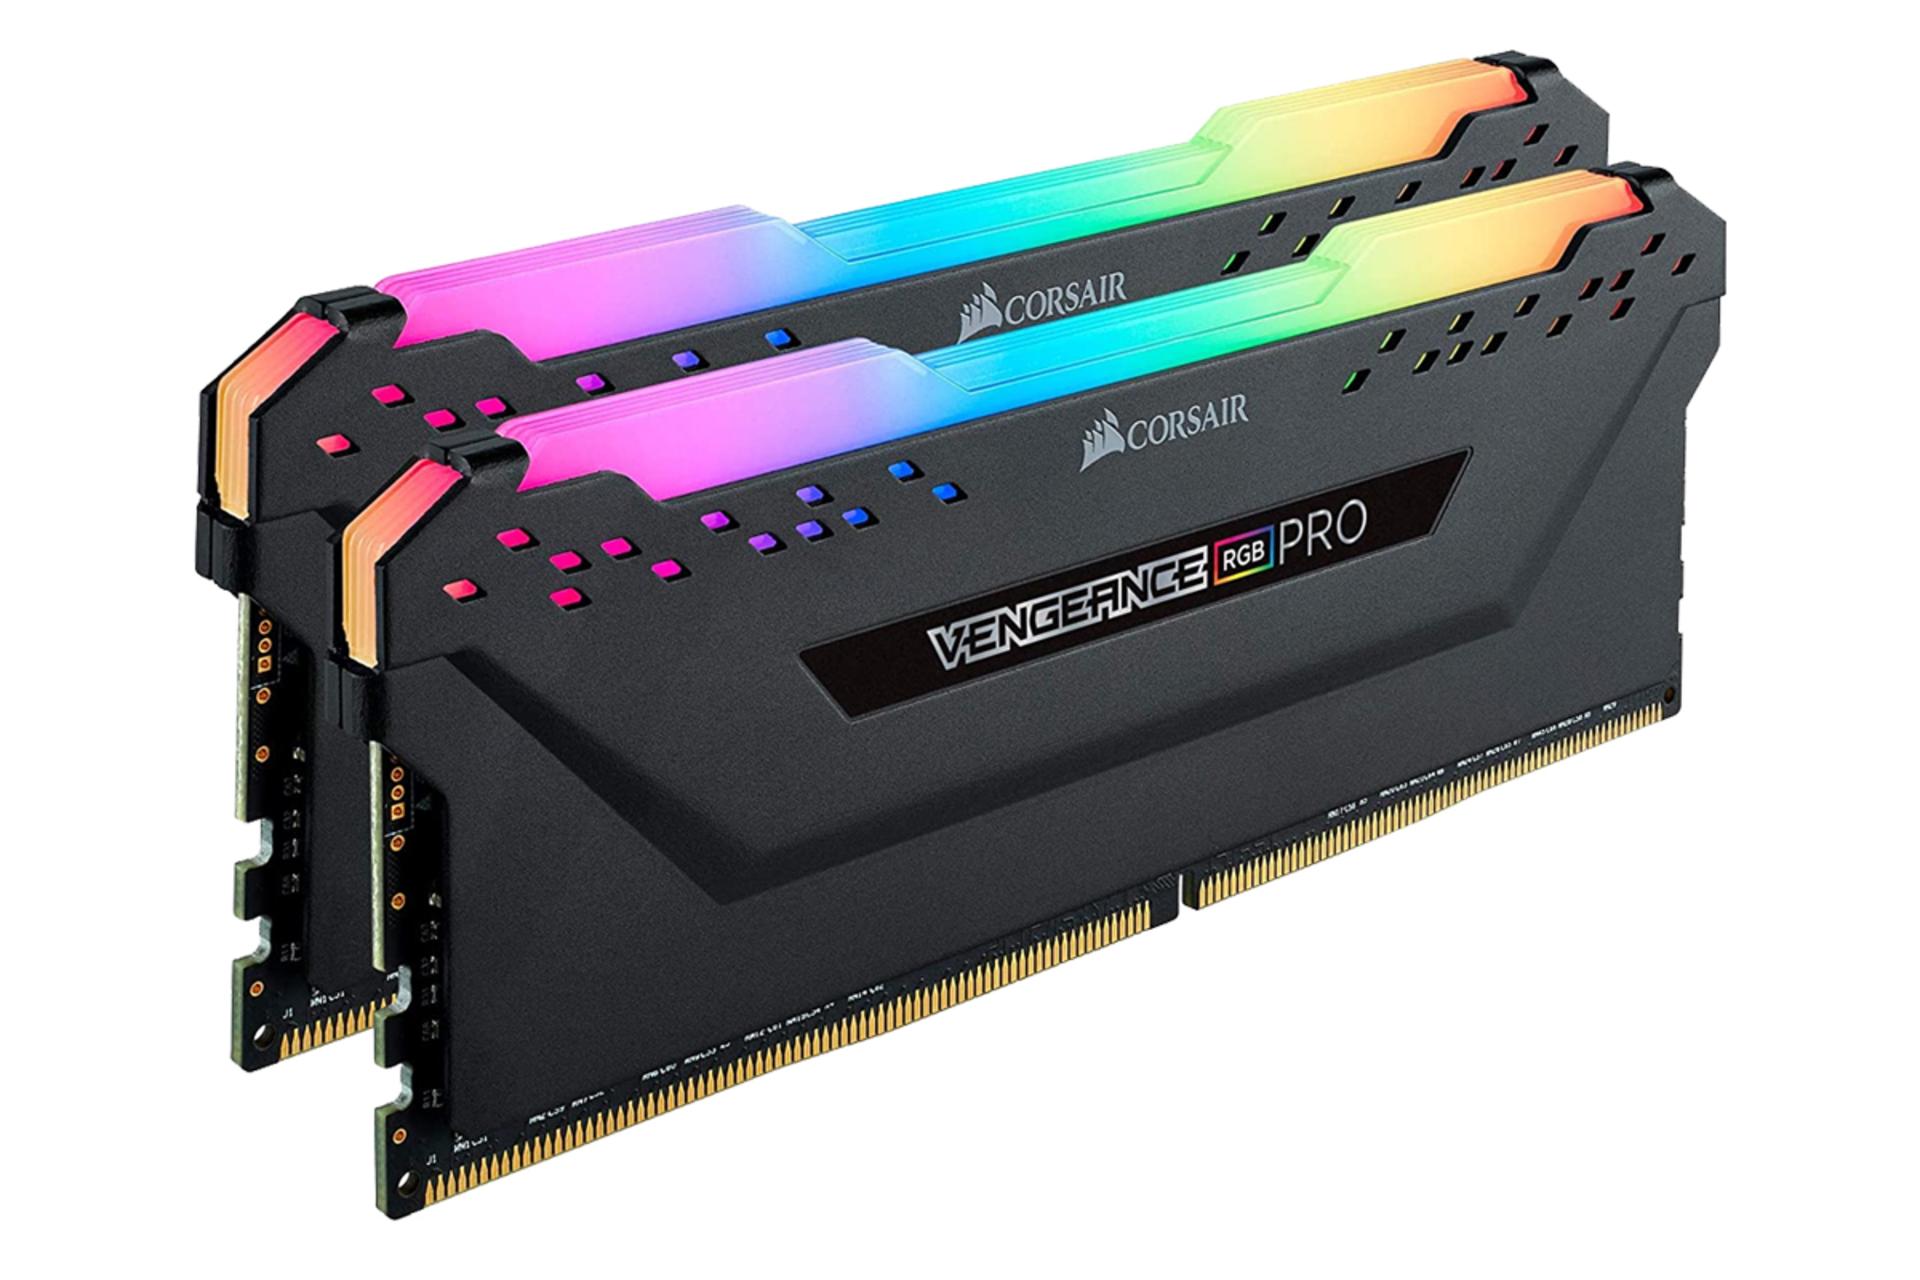 نمای جانبی مشکی رم کورسیر VENGEANCE RGB PRO ظرفیت 16 گیگابایت (2x8) از نوع DDR4-4000